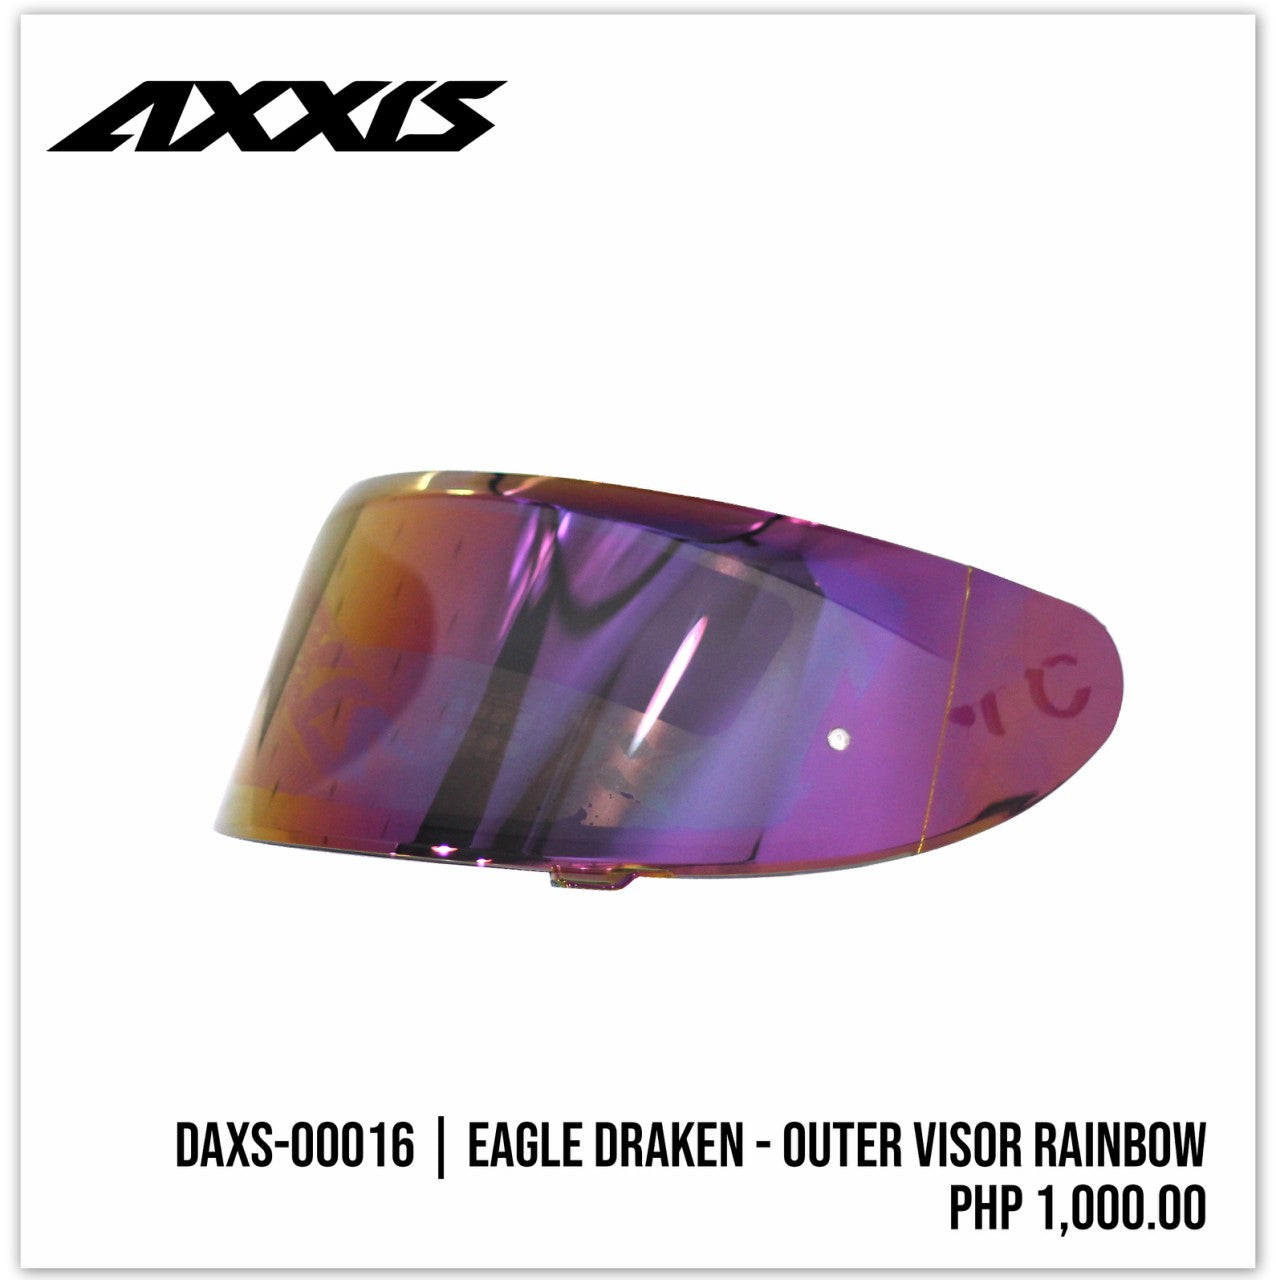 Eagle Draken - Outer Visor Rainbow